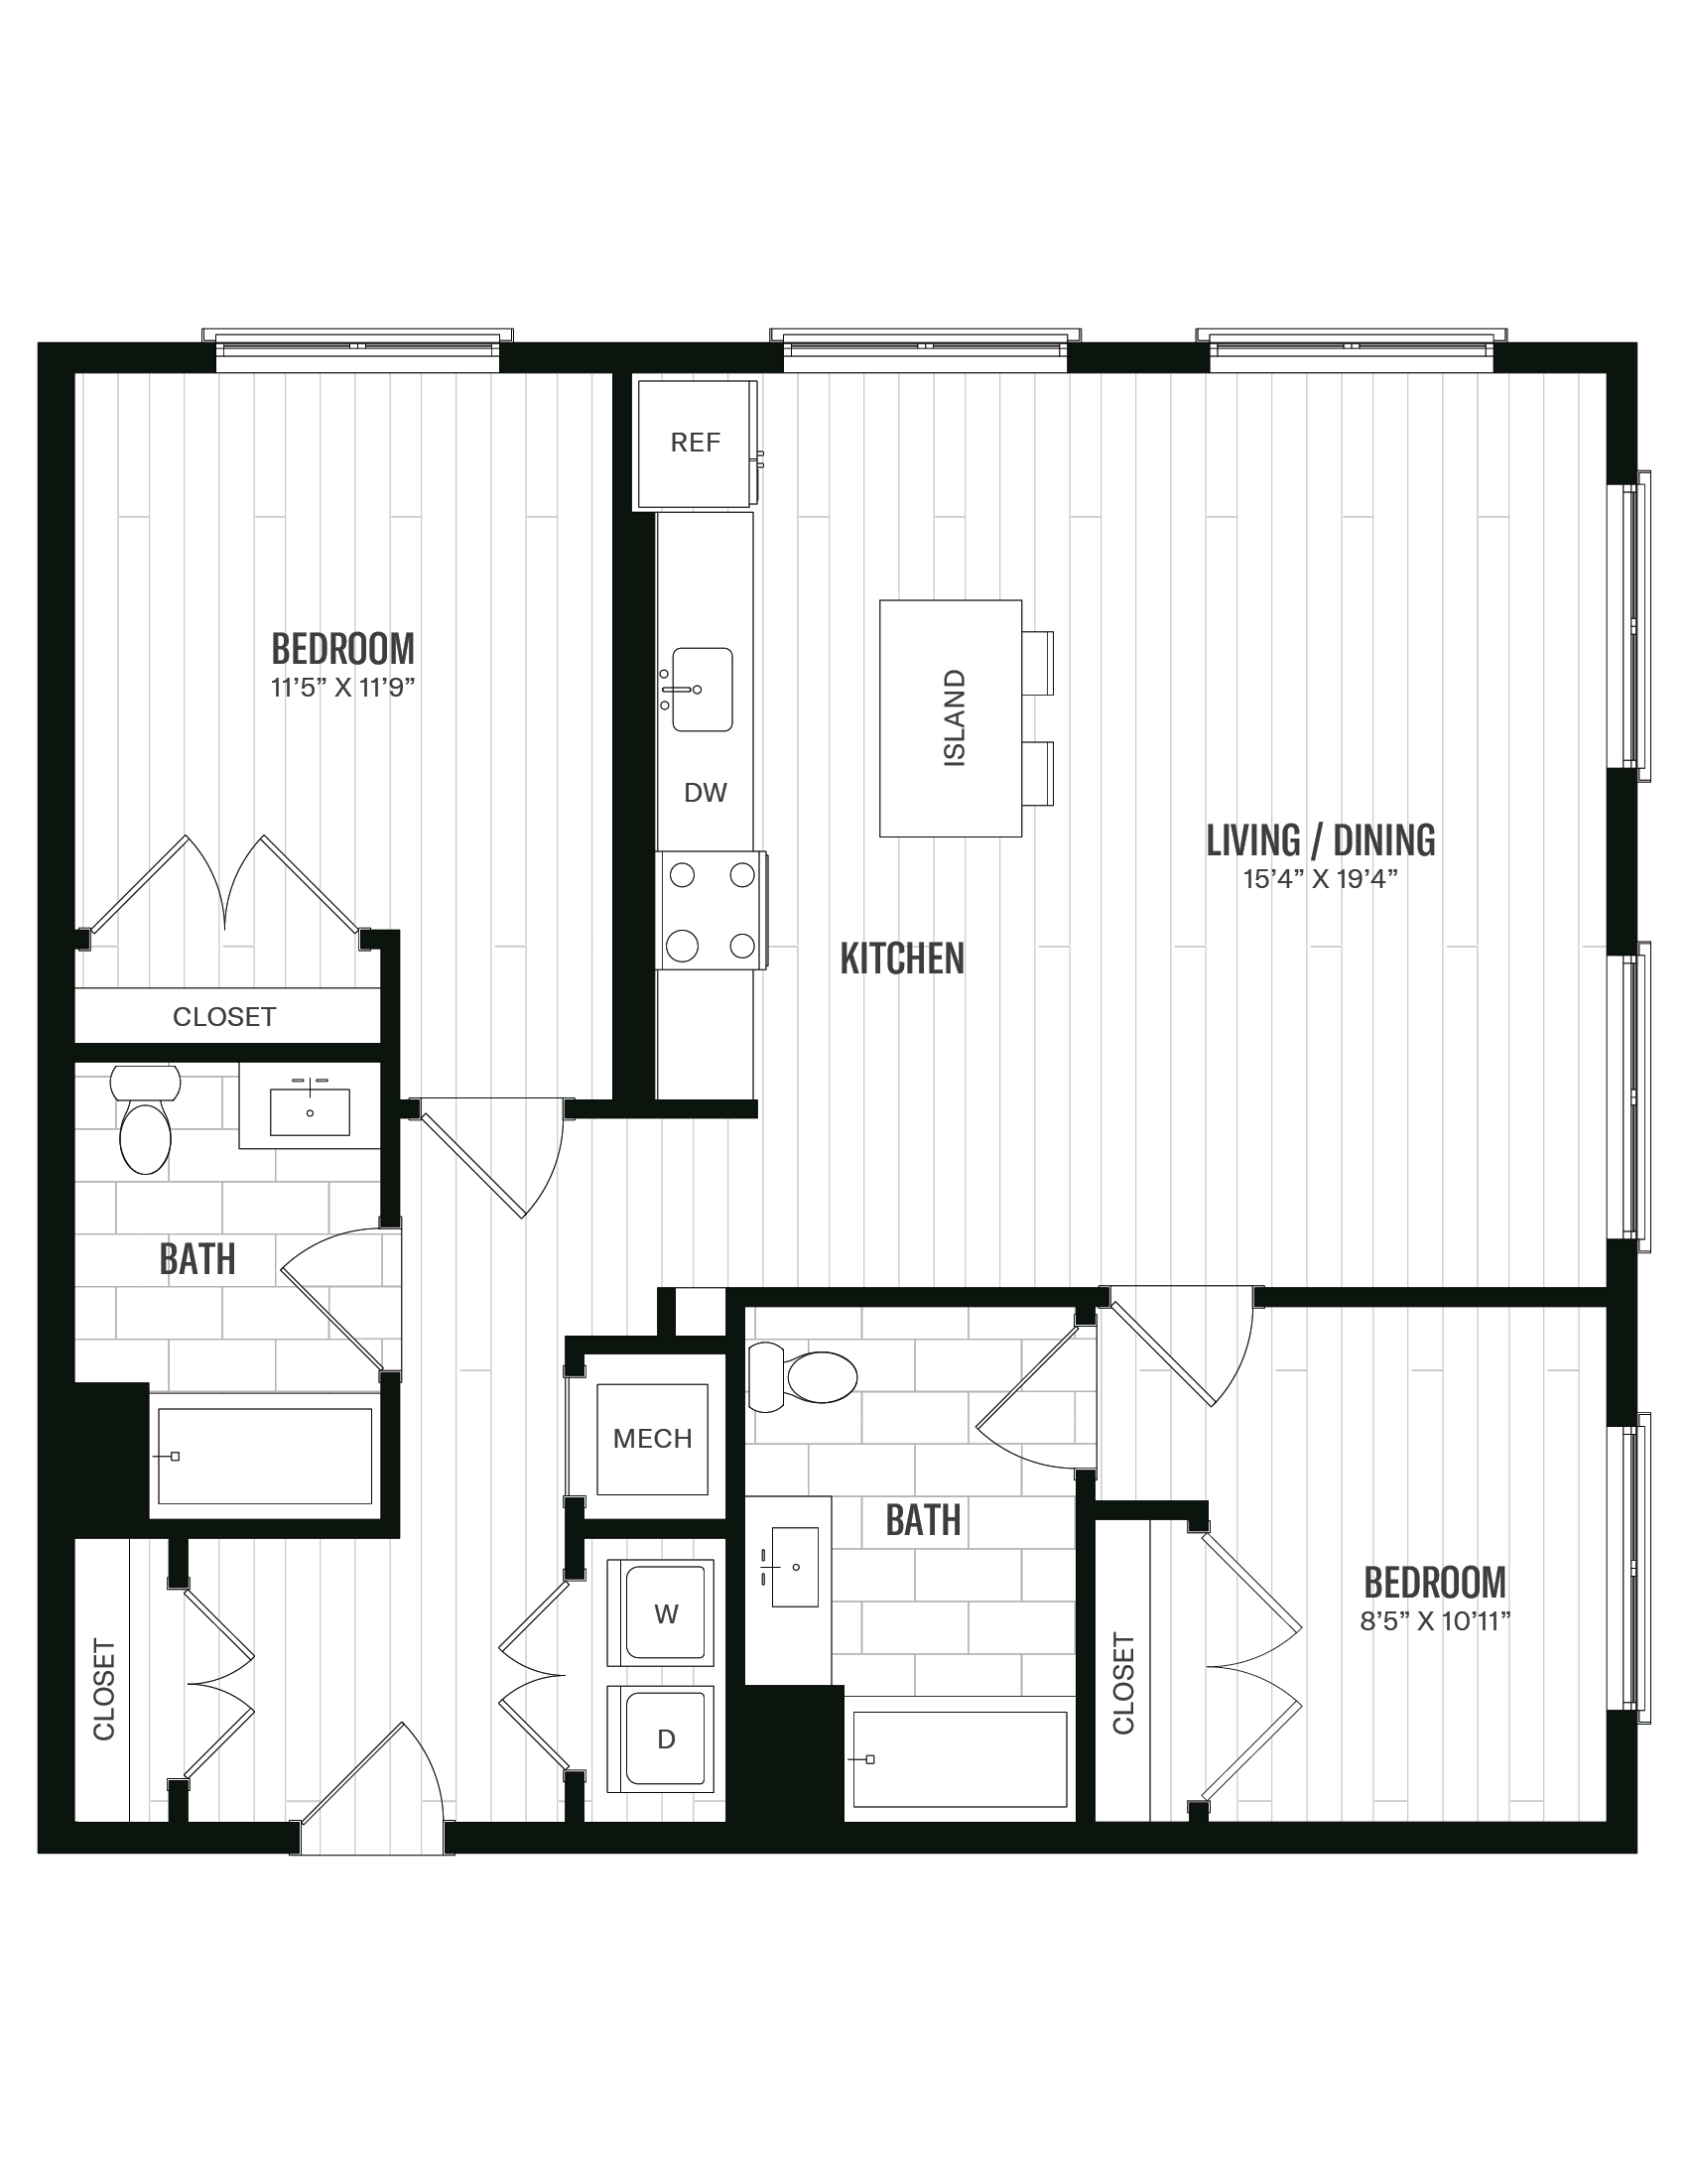 Floorplan image of unit 666